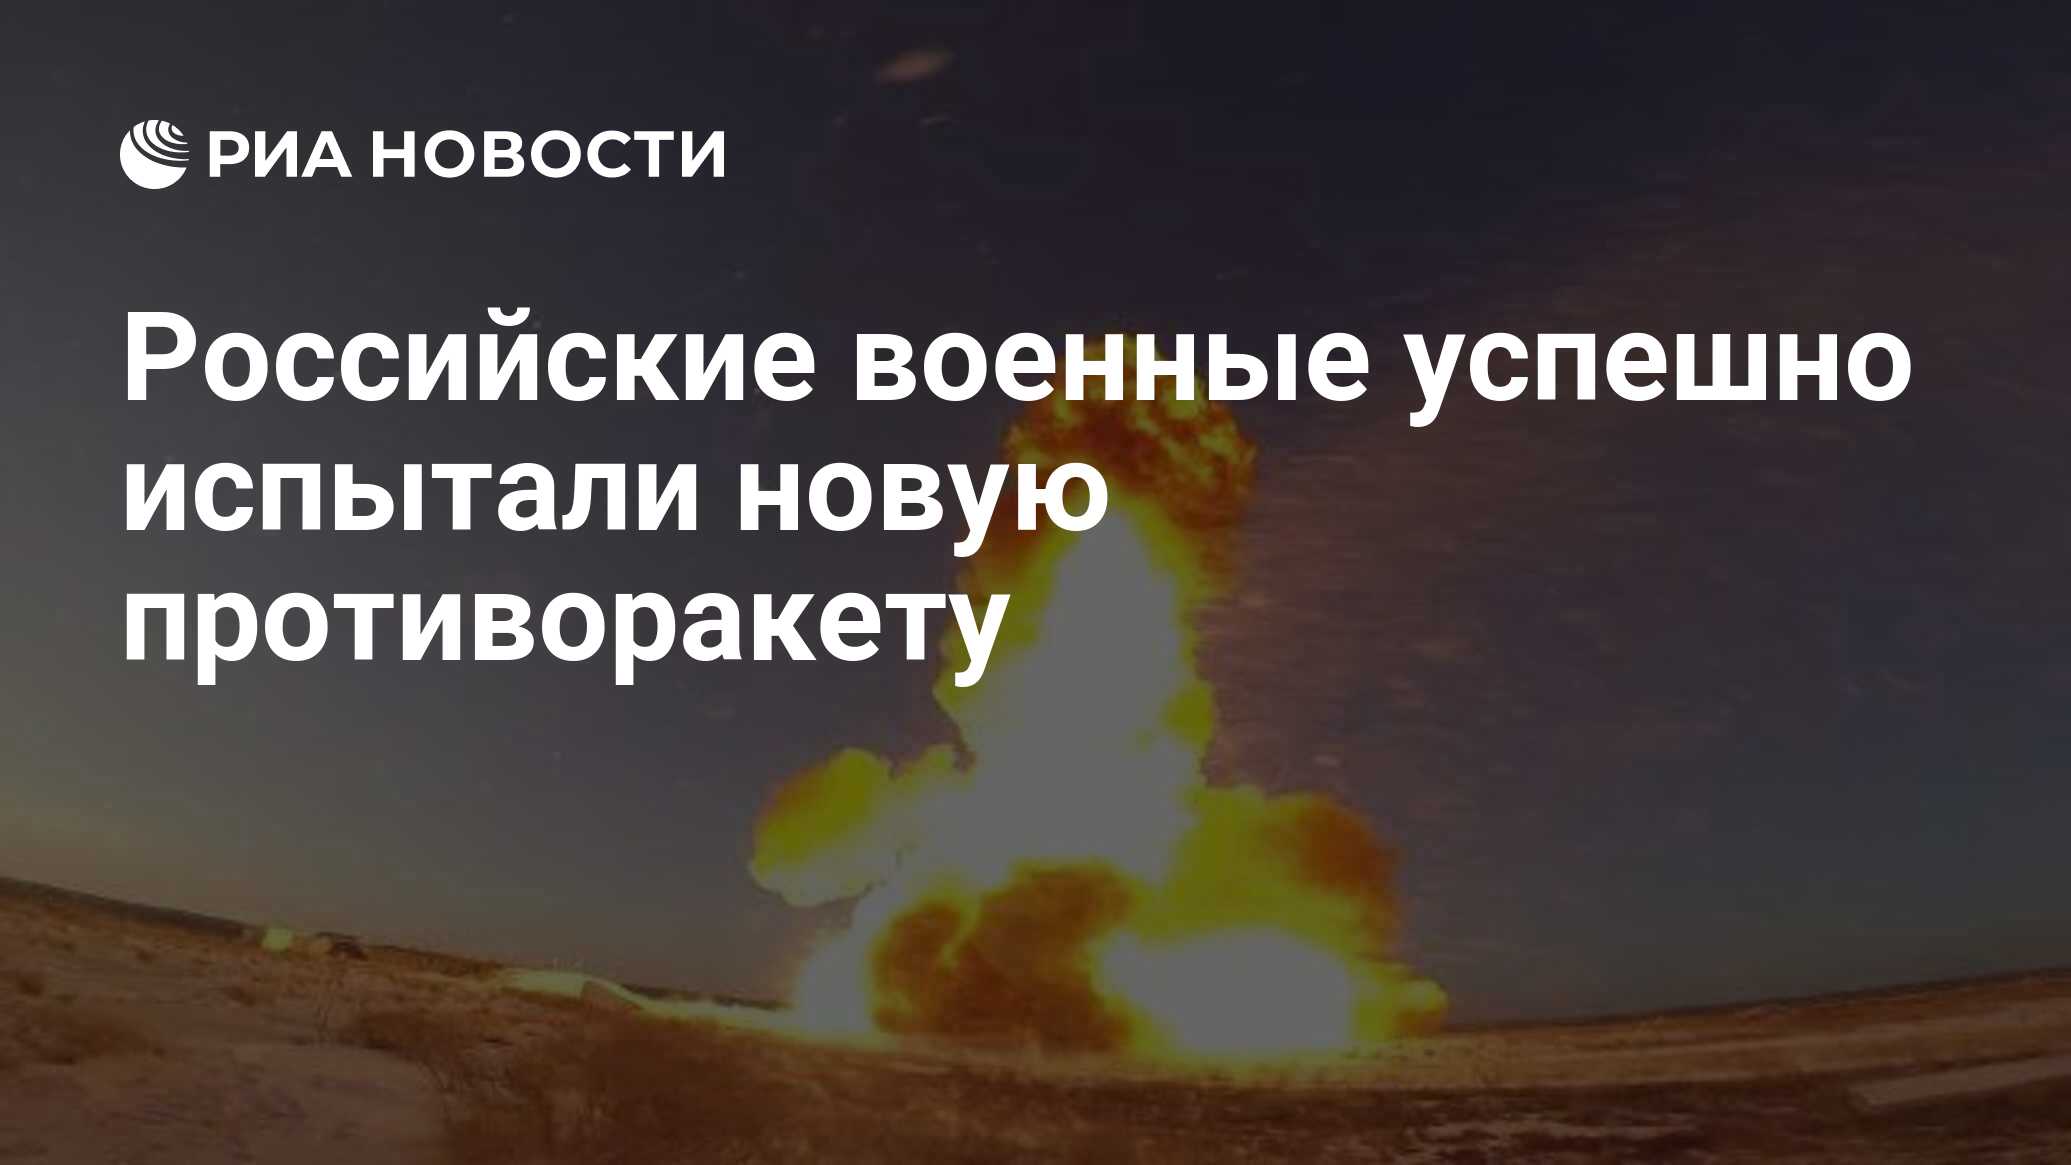 Российская армия успешно испытала новую противоракетную систему